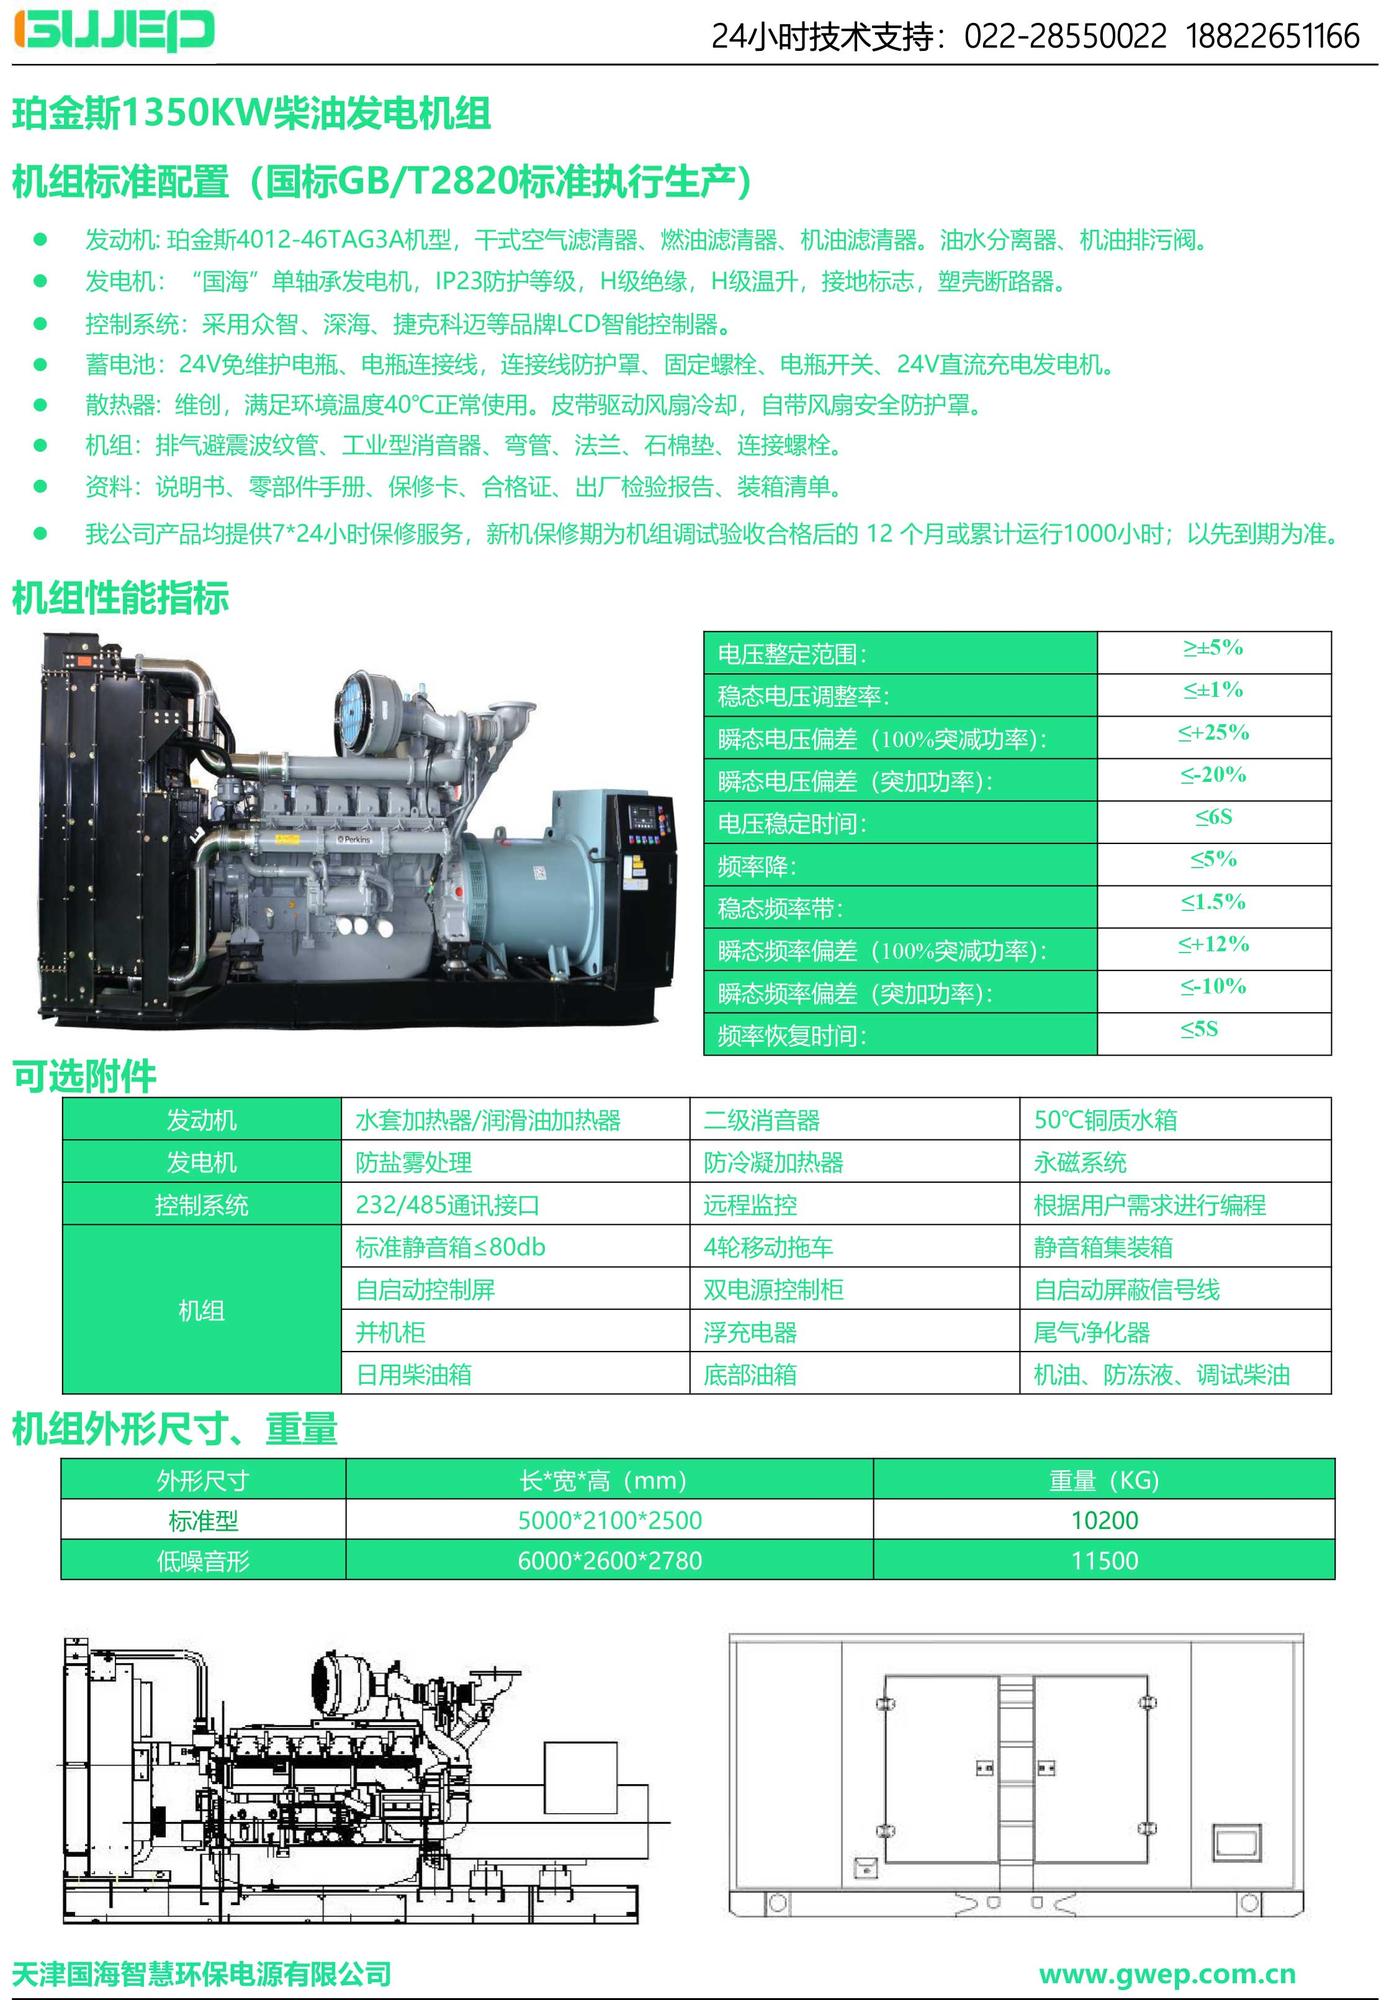 珀金斯1350KW发电机组技术资料-1.jpg